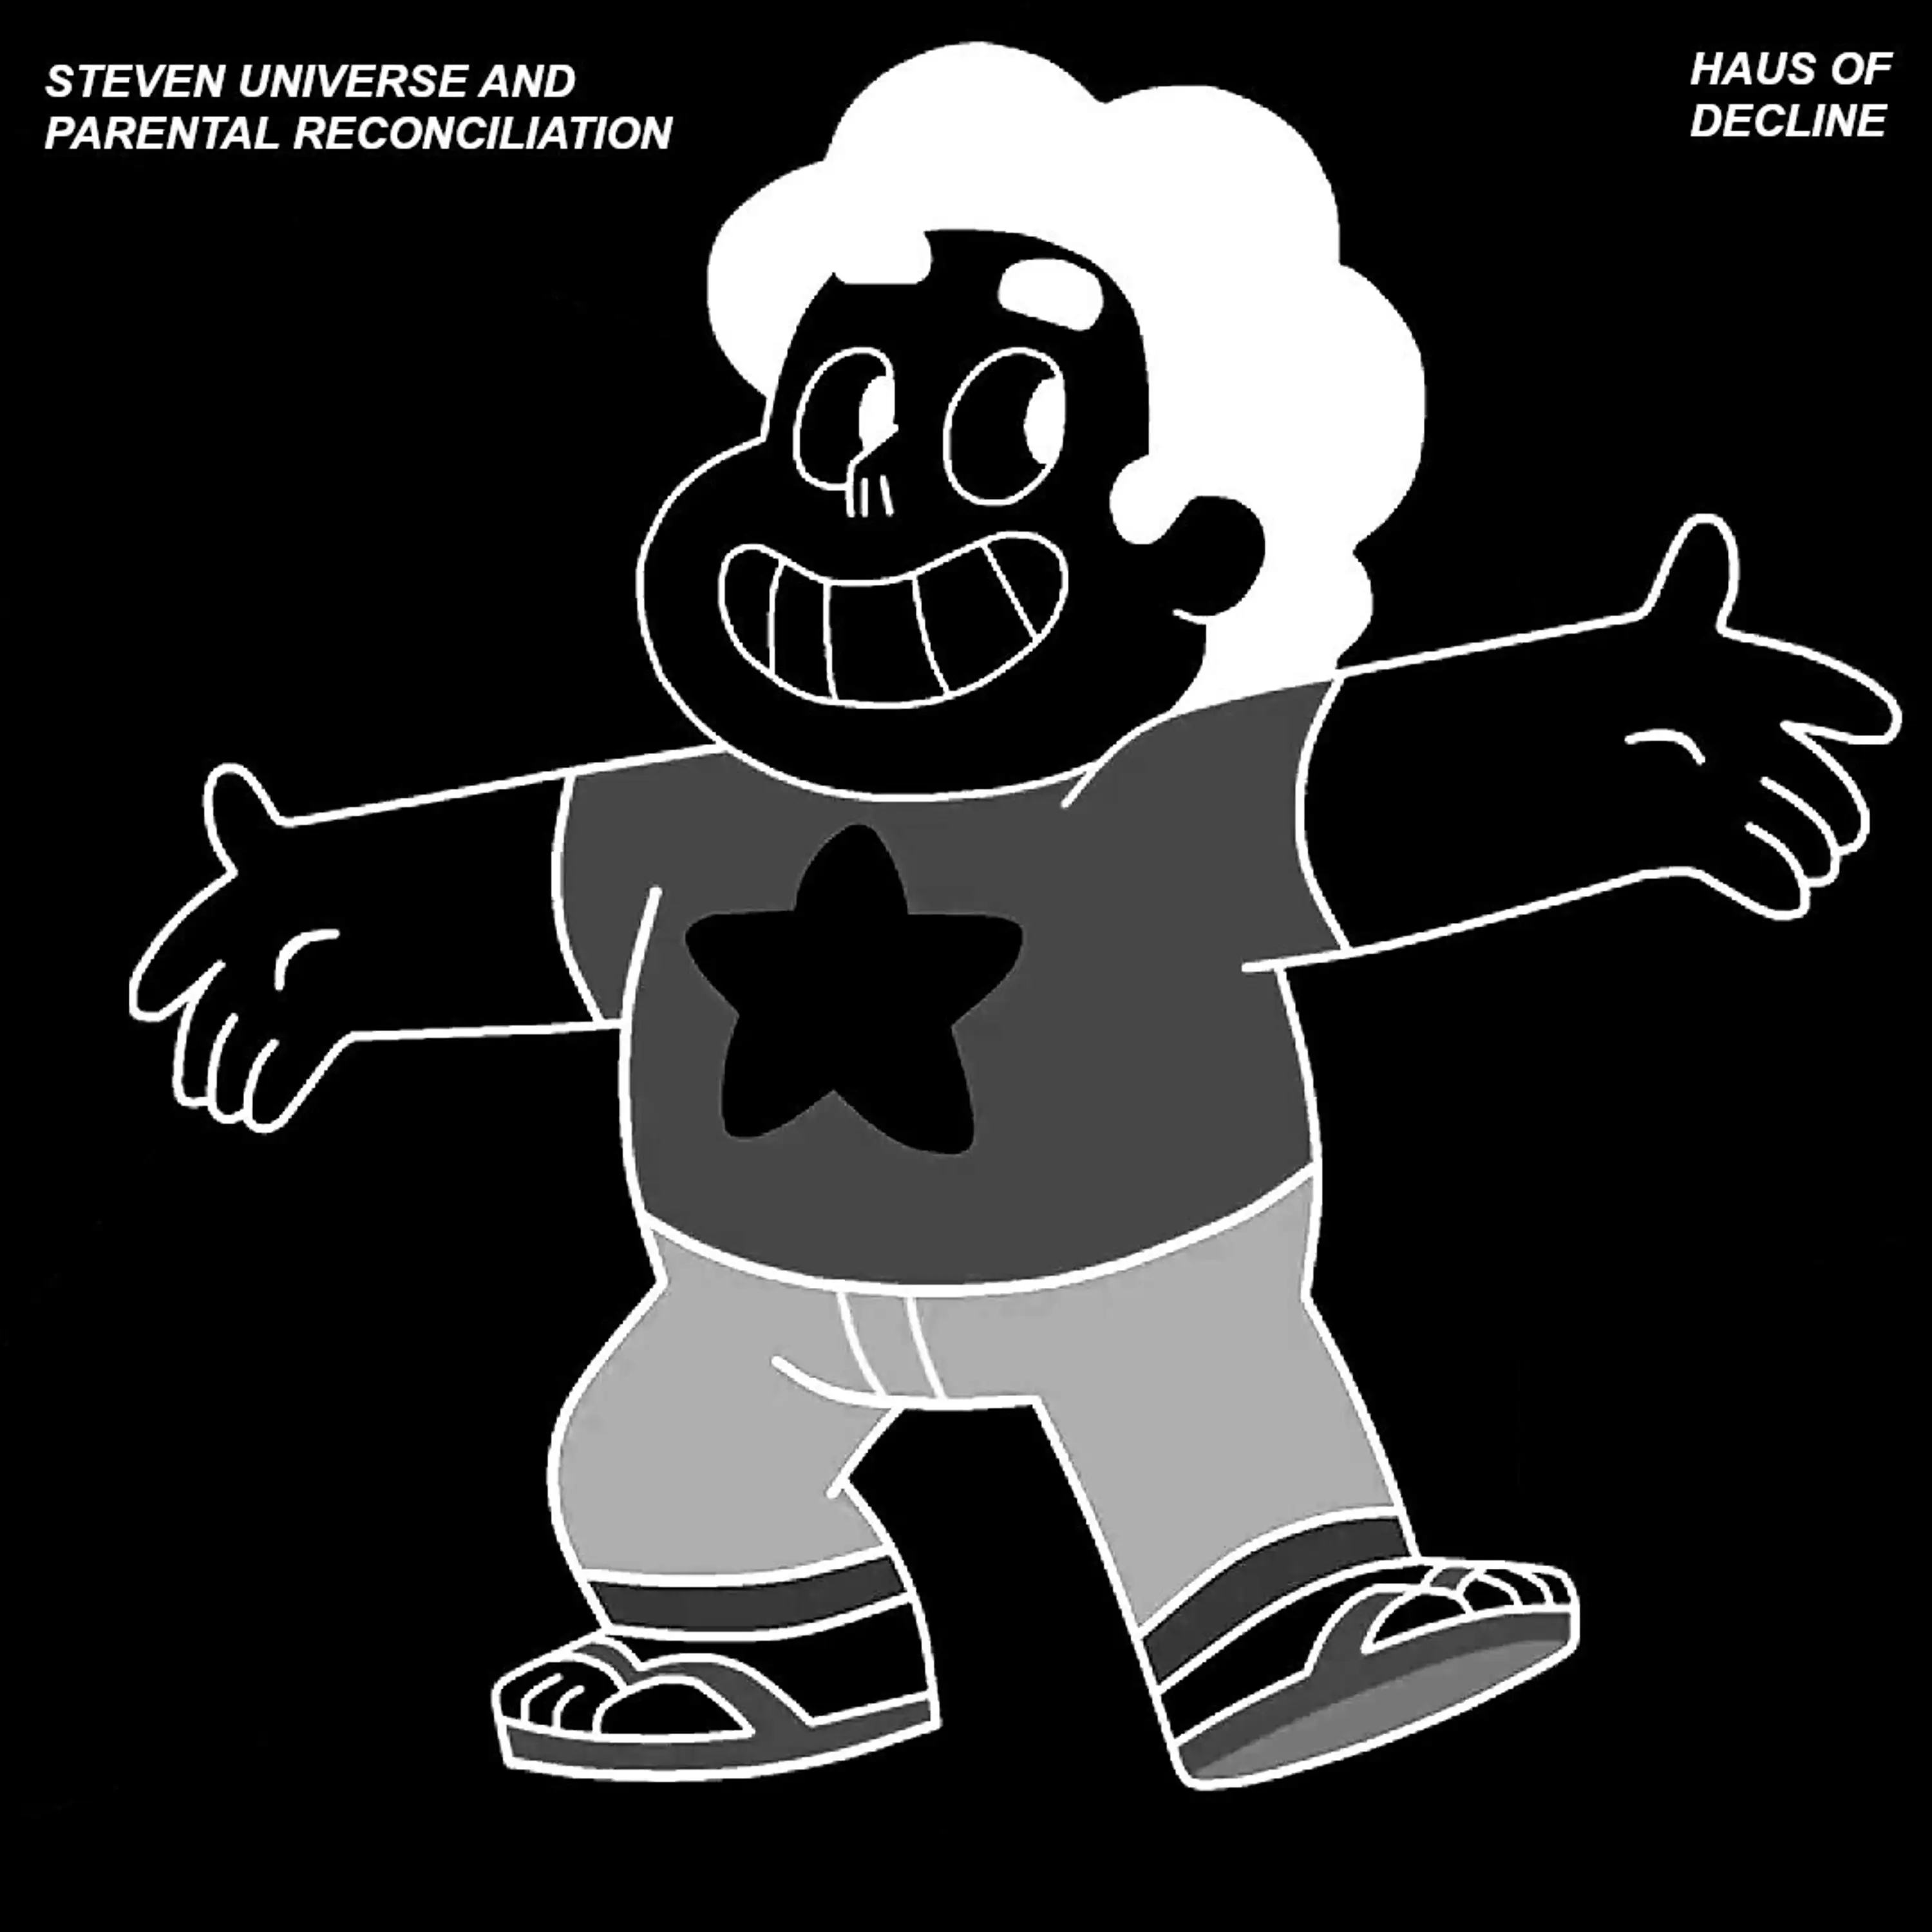 Steven Universe and Parental Reconciliation